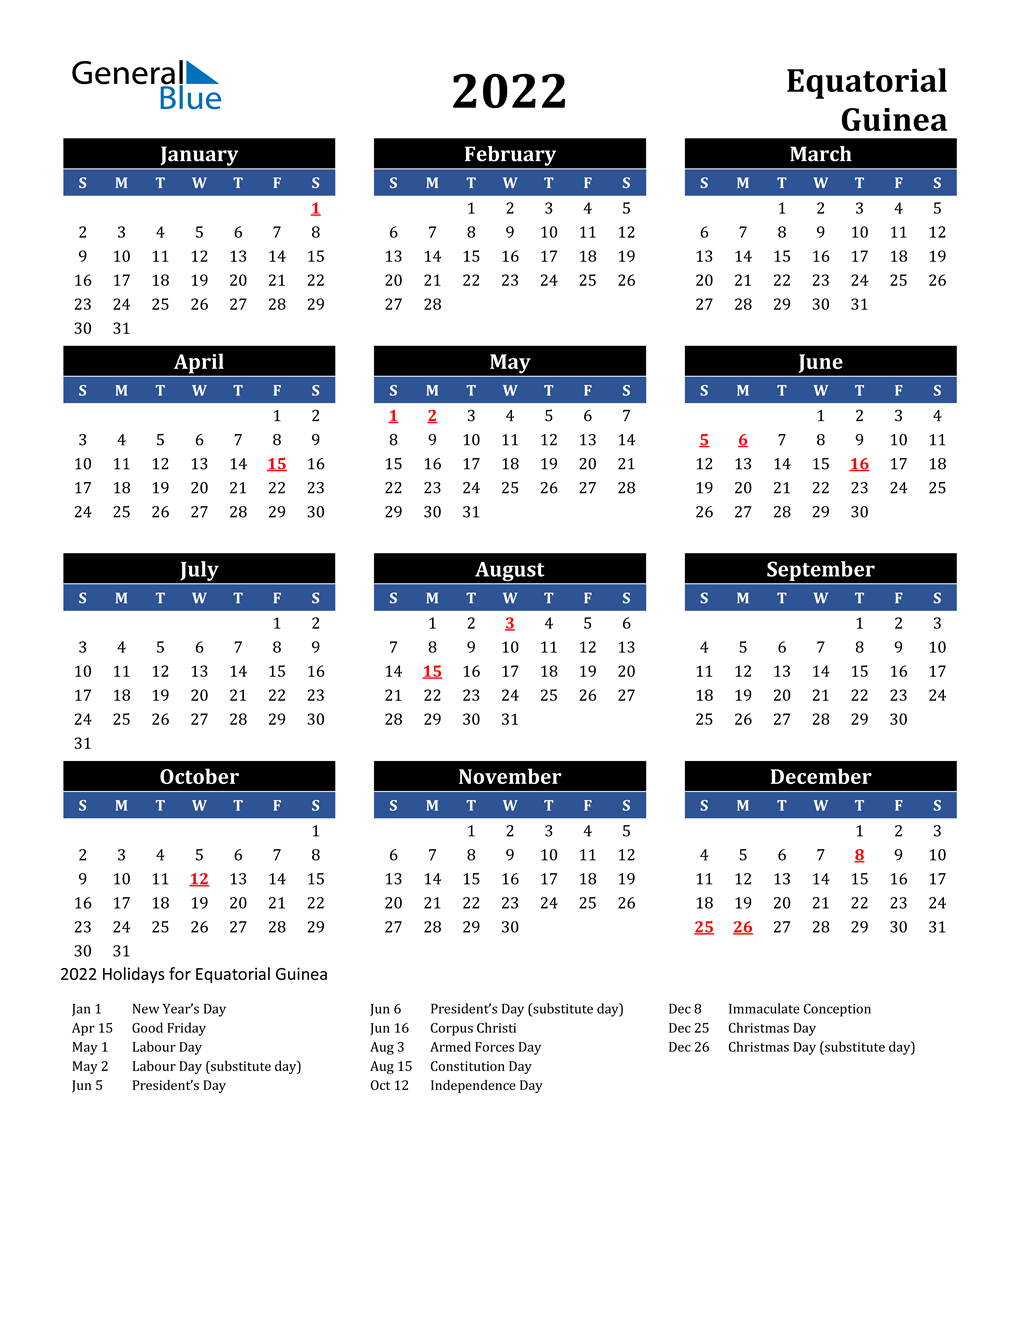 2022 equatorial guinea calendar with holidays